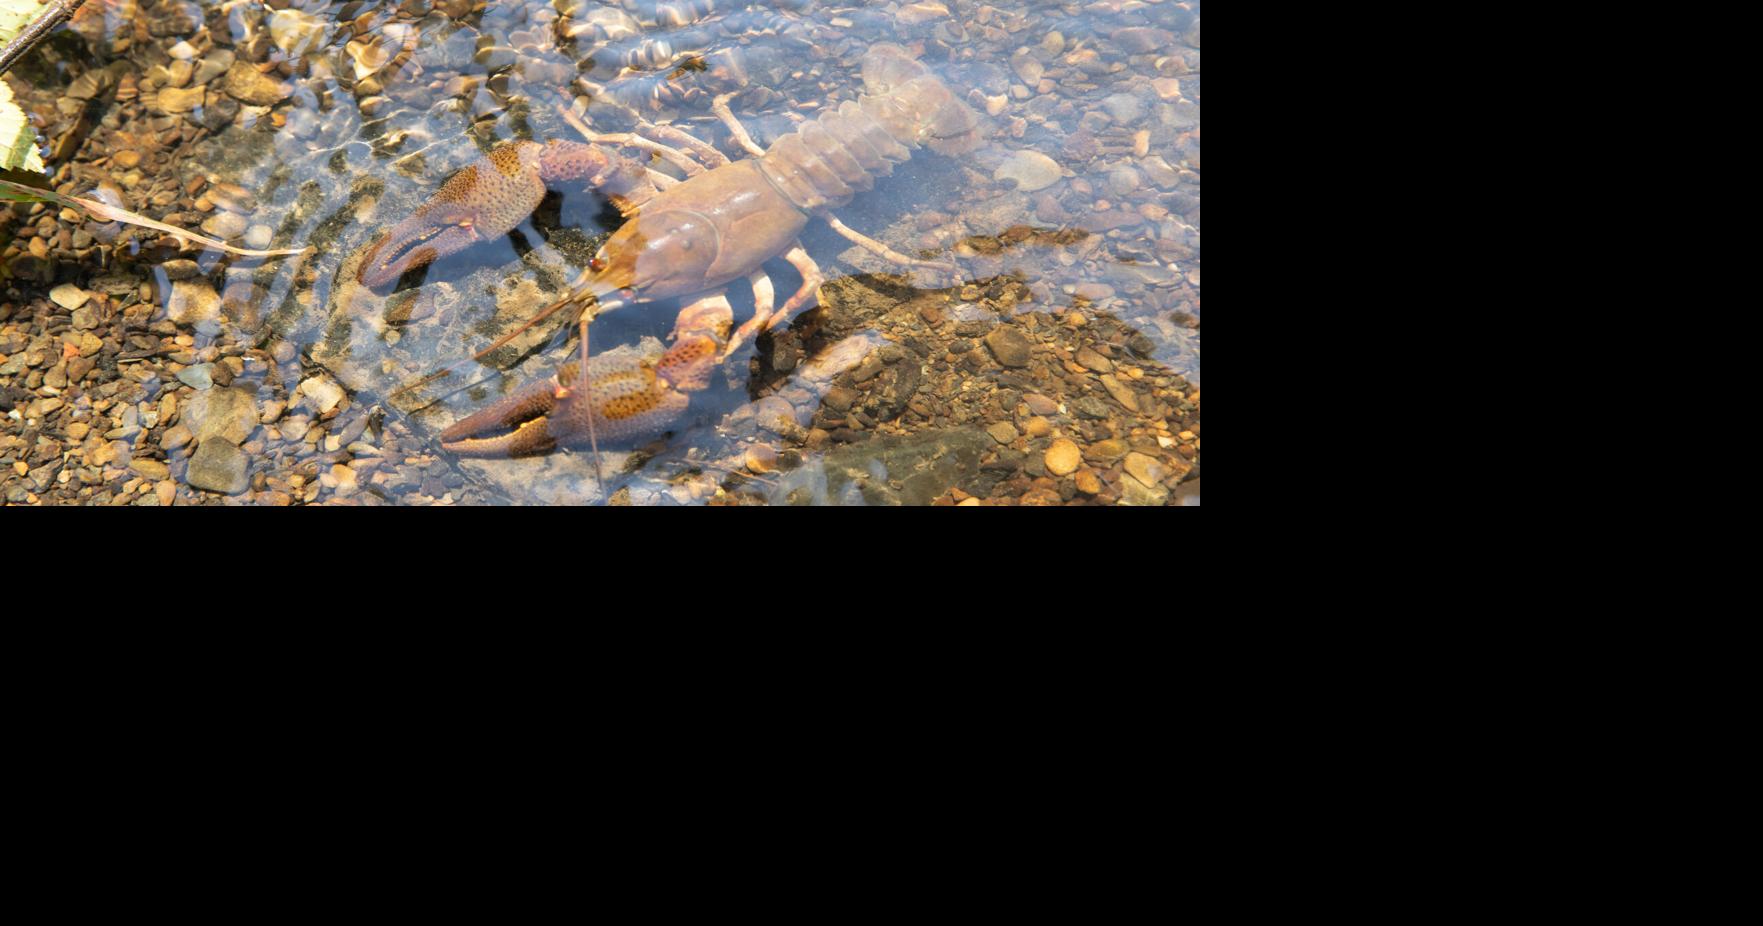 The Crawfish Bite, Fishing